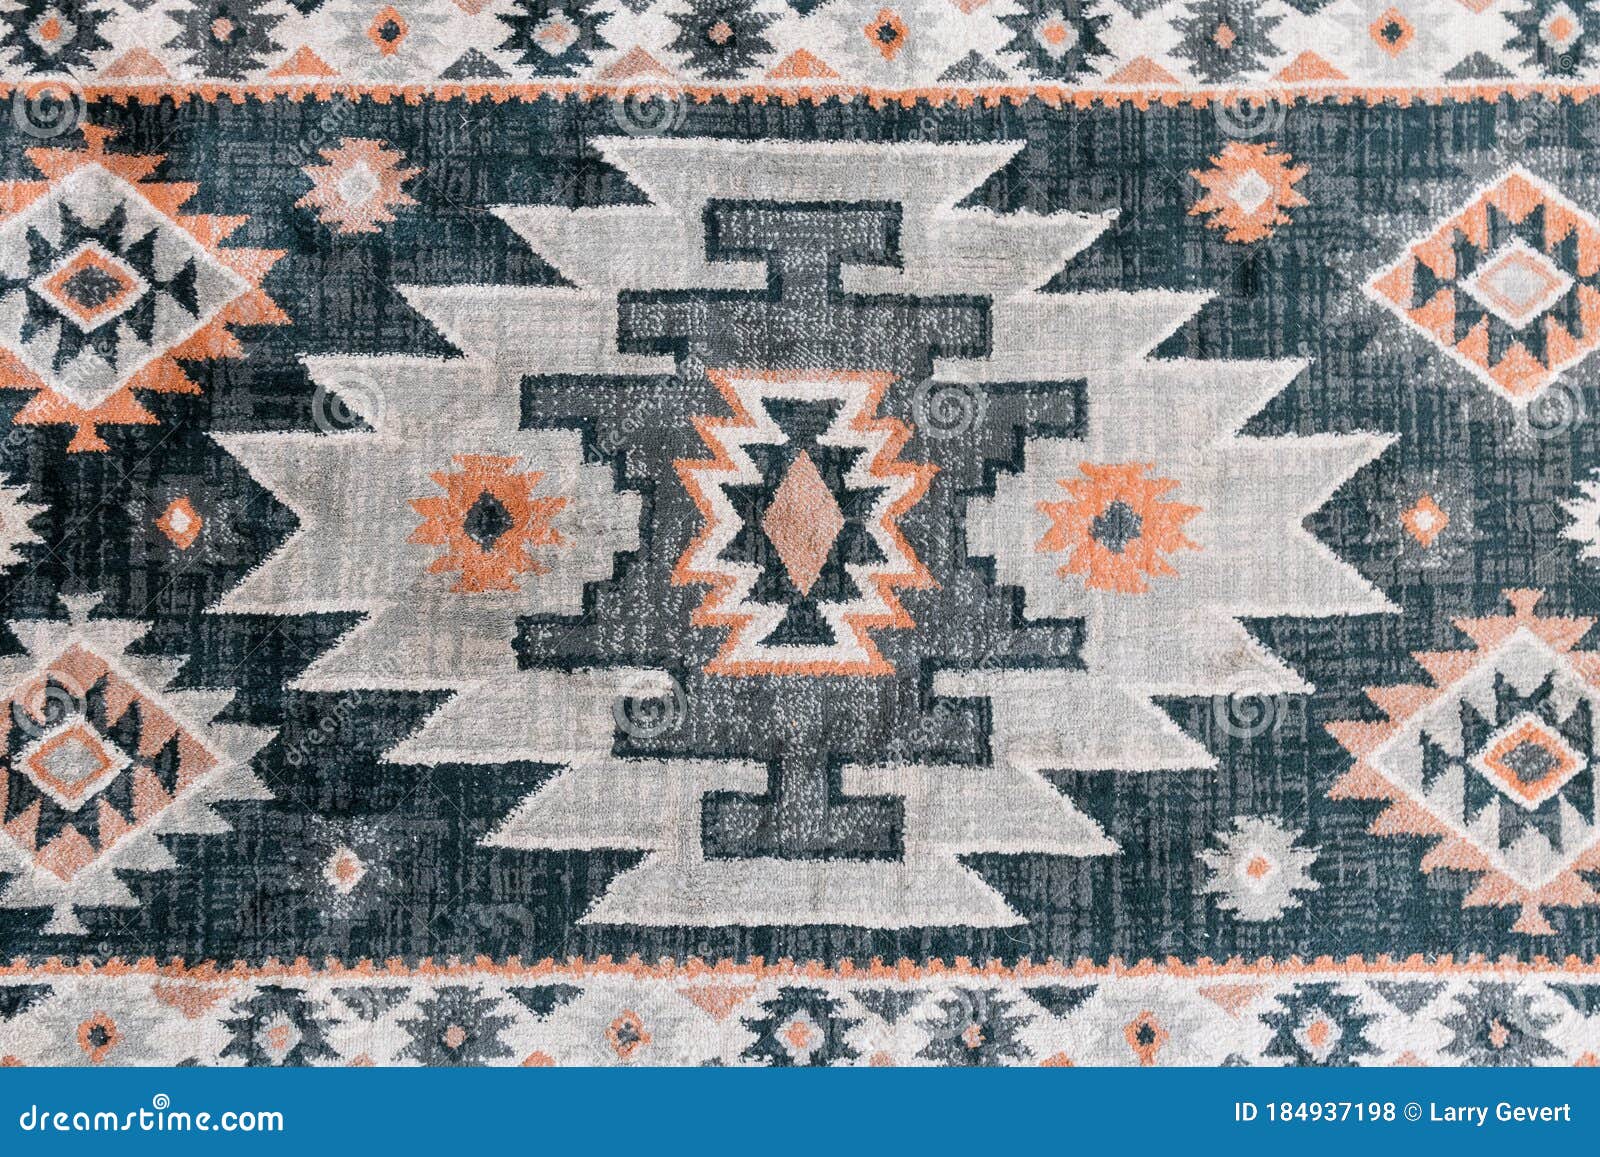 native american  rug